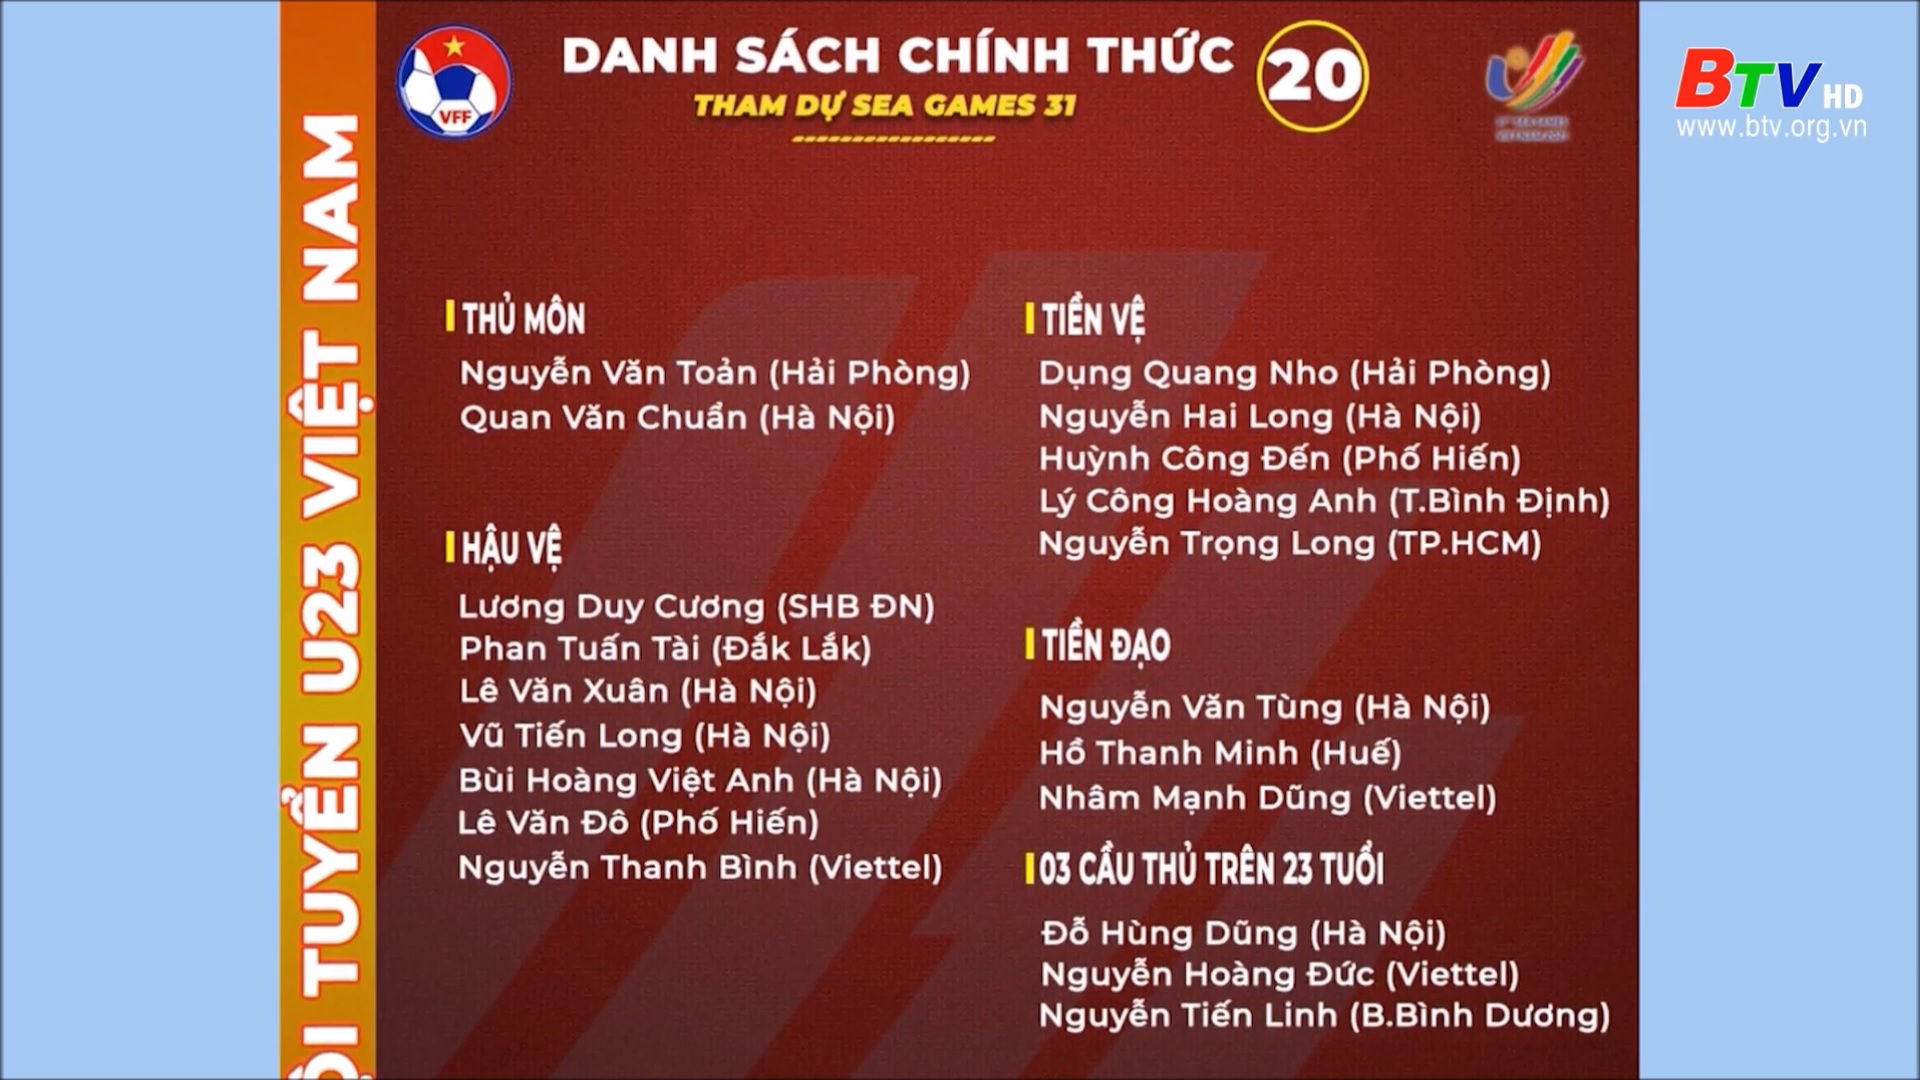 Chốt danh sách chính thức đội tuyển U23 Việt Nam tham dự SEA Games 31